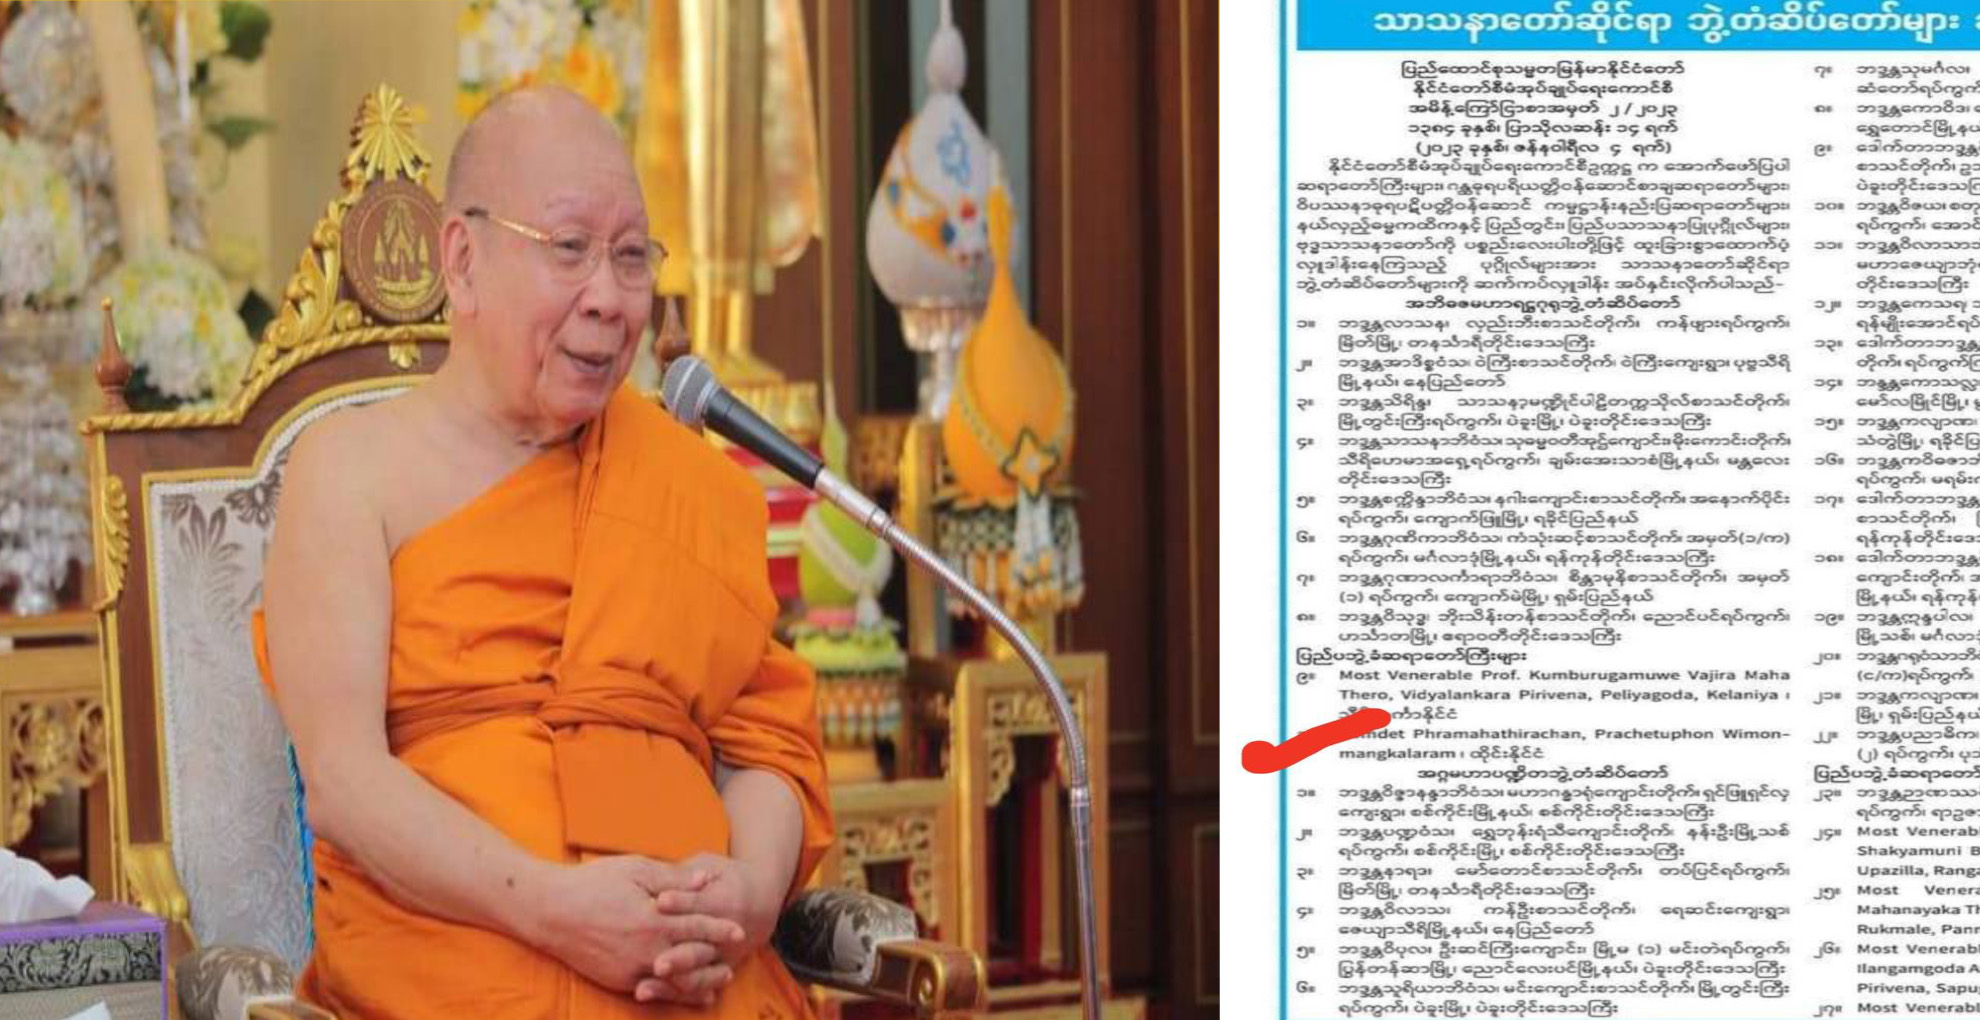 รัฐบาลพม่าถวายสมณศักดิ์ชั้น”อภิธชมหารัฐคุรุ” ซึ่งเป็นชั้นสูงสุดแด่ “สมเด็จพระมหาธีราจารย์”